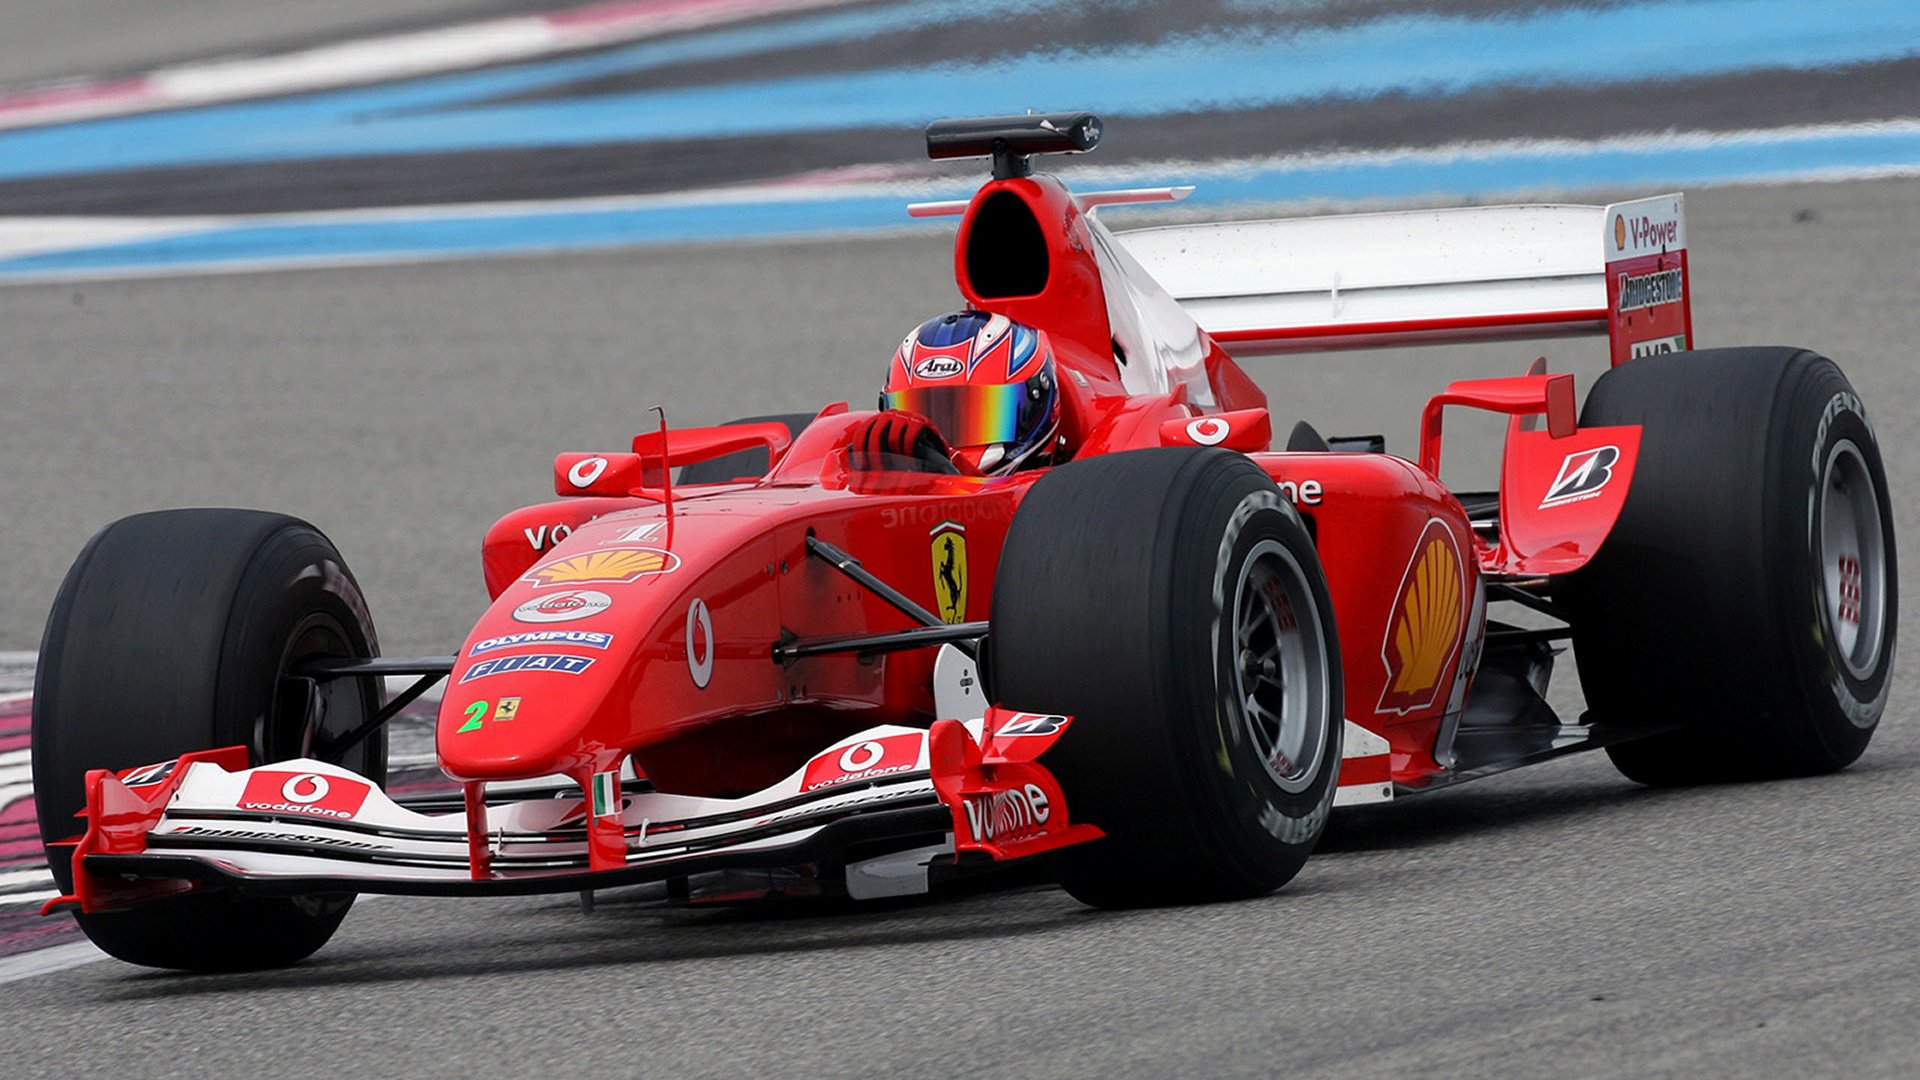 Ferrari F2004 and HD Image